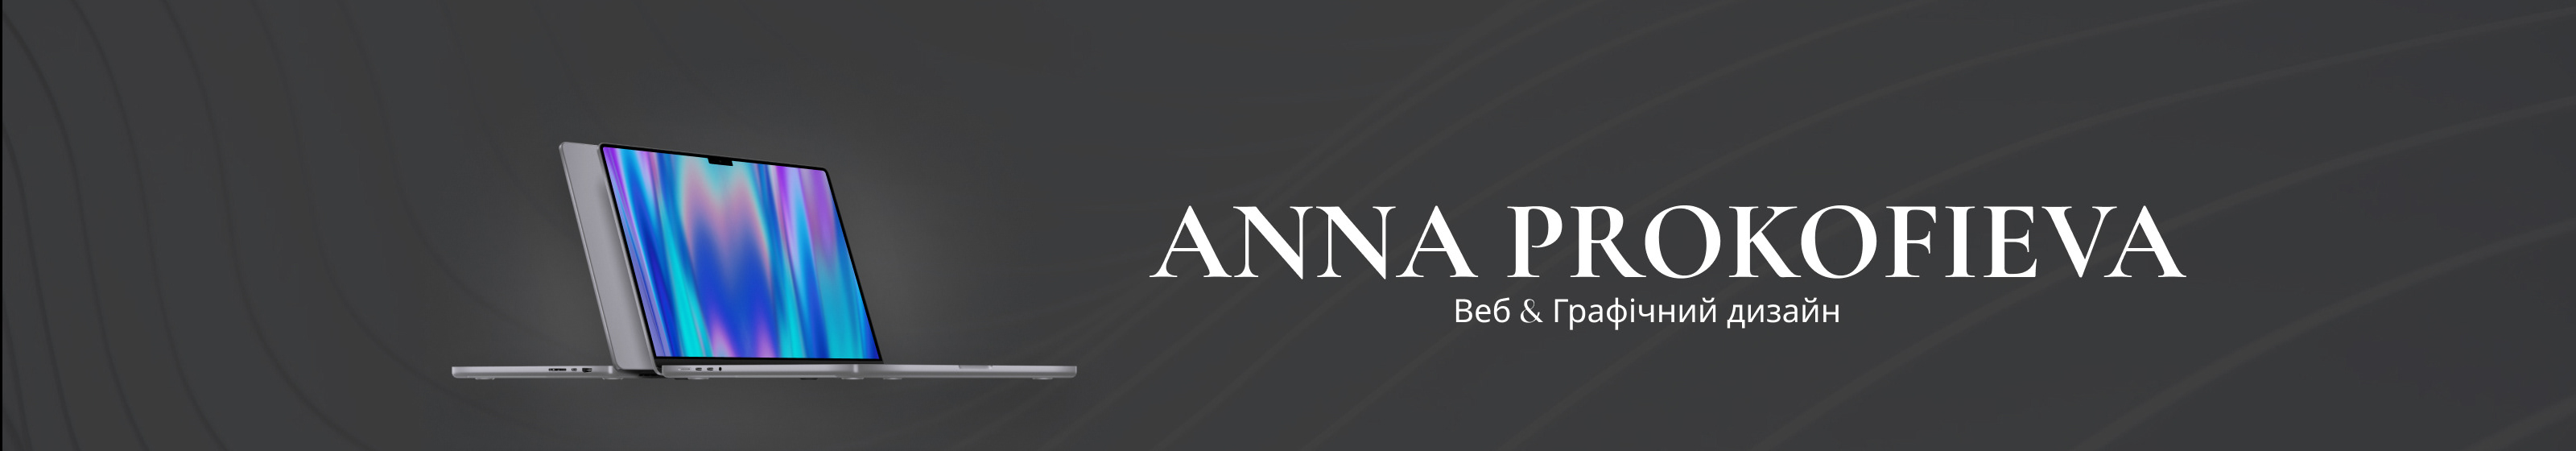 Banner de perfil de Anna Prokofieva